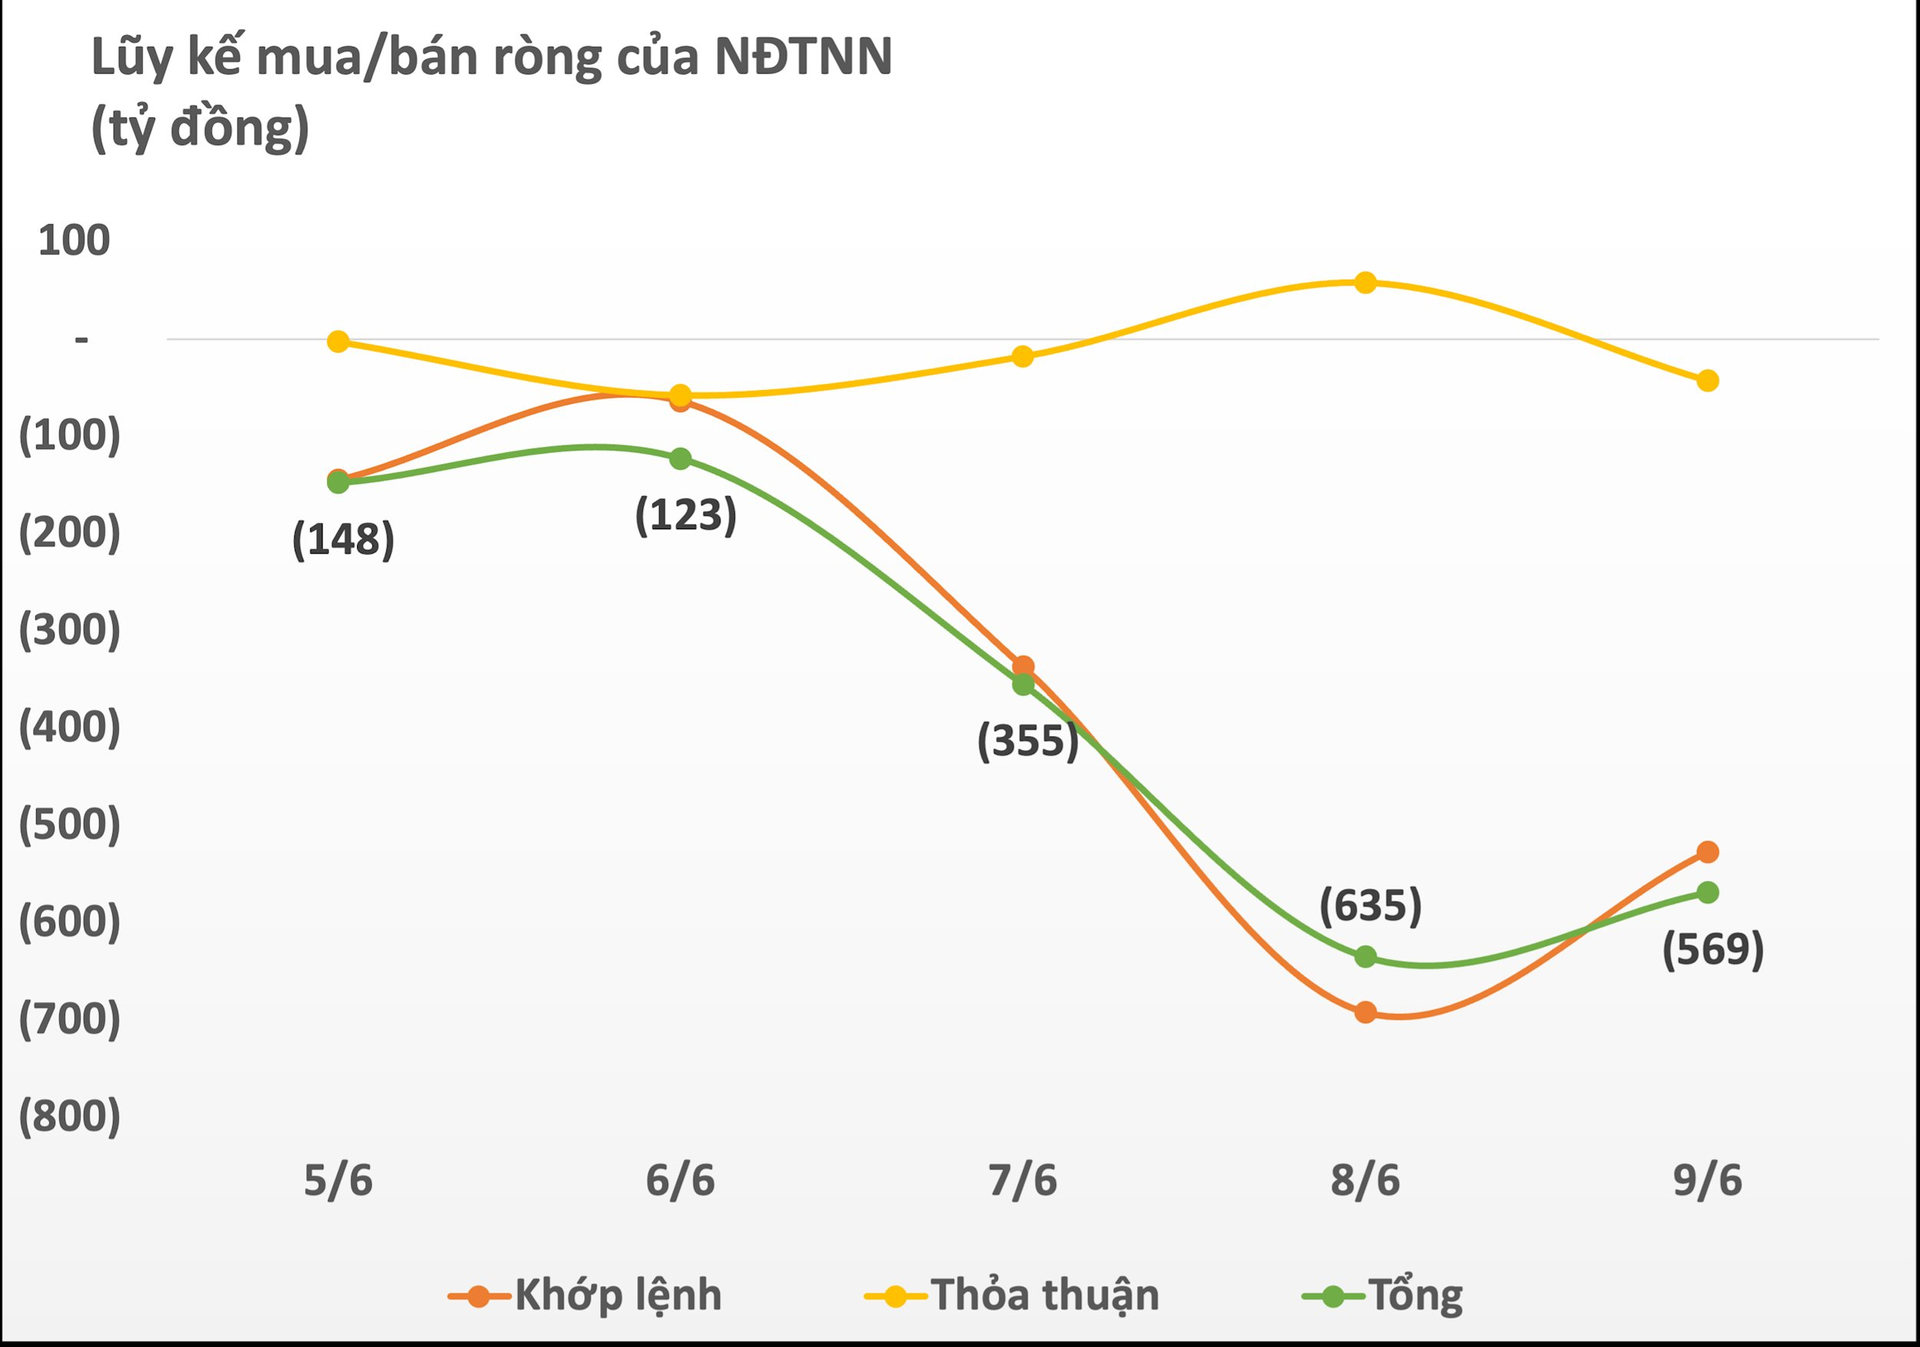 Khối ngoại giảm đà bán ròng trong tuần 5-9/6, bán mạnh VNM trong khi "gom" hai cổ phiếu đầu ngành chứng khoán - Ảnh 1.